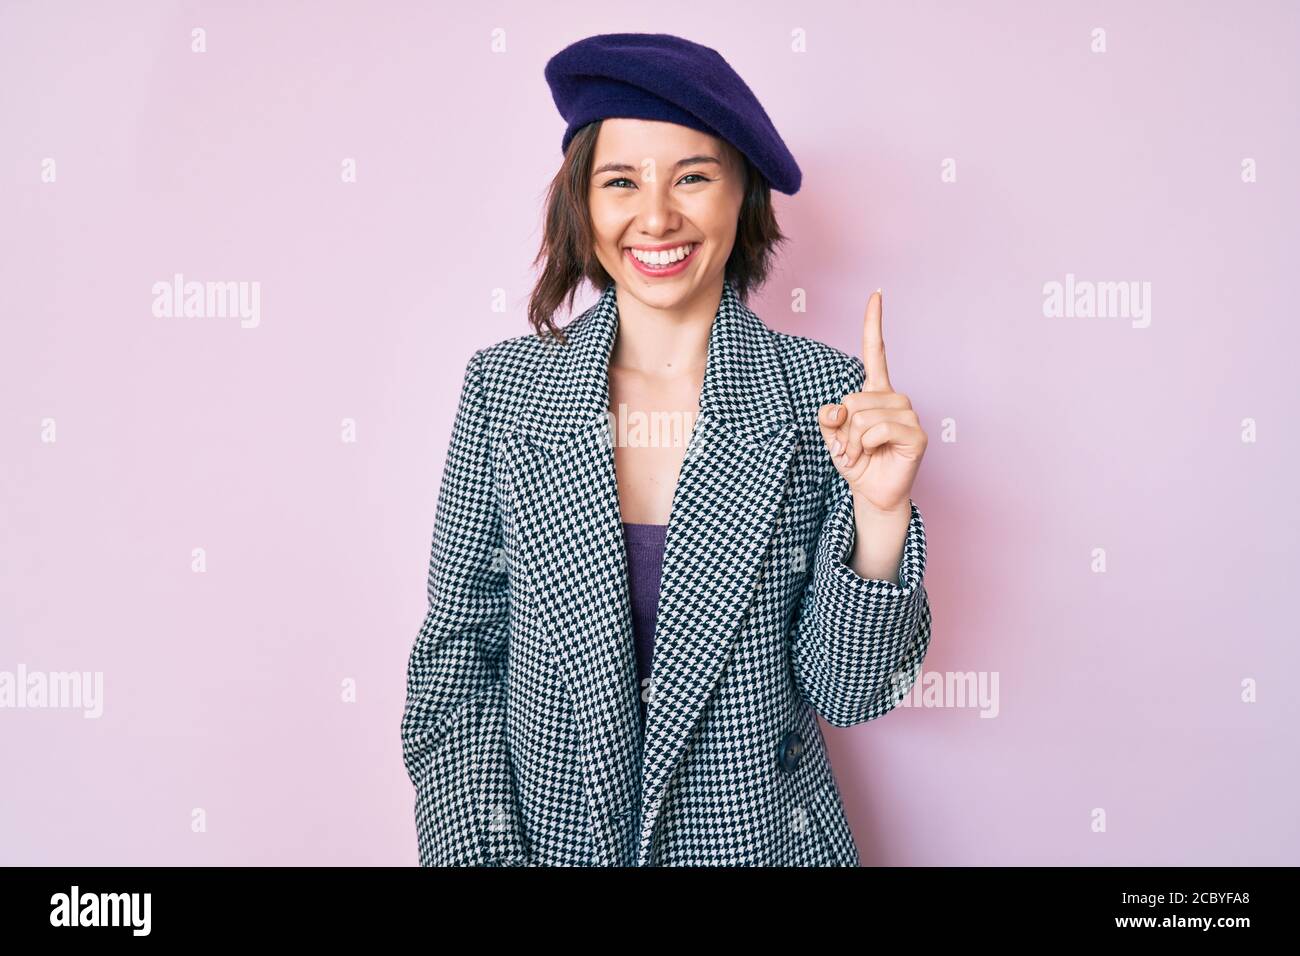 Junge schöne Frau trägt französisch Look mit Baskenmütze zeigt Finger nach  oben mit erfolgreicher Idee. Begeistert und glücklich. Nummer eins  Stockfotografie - Alamy